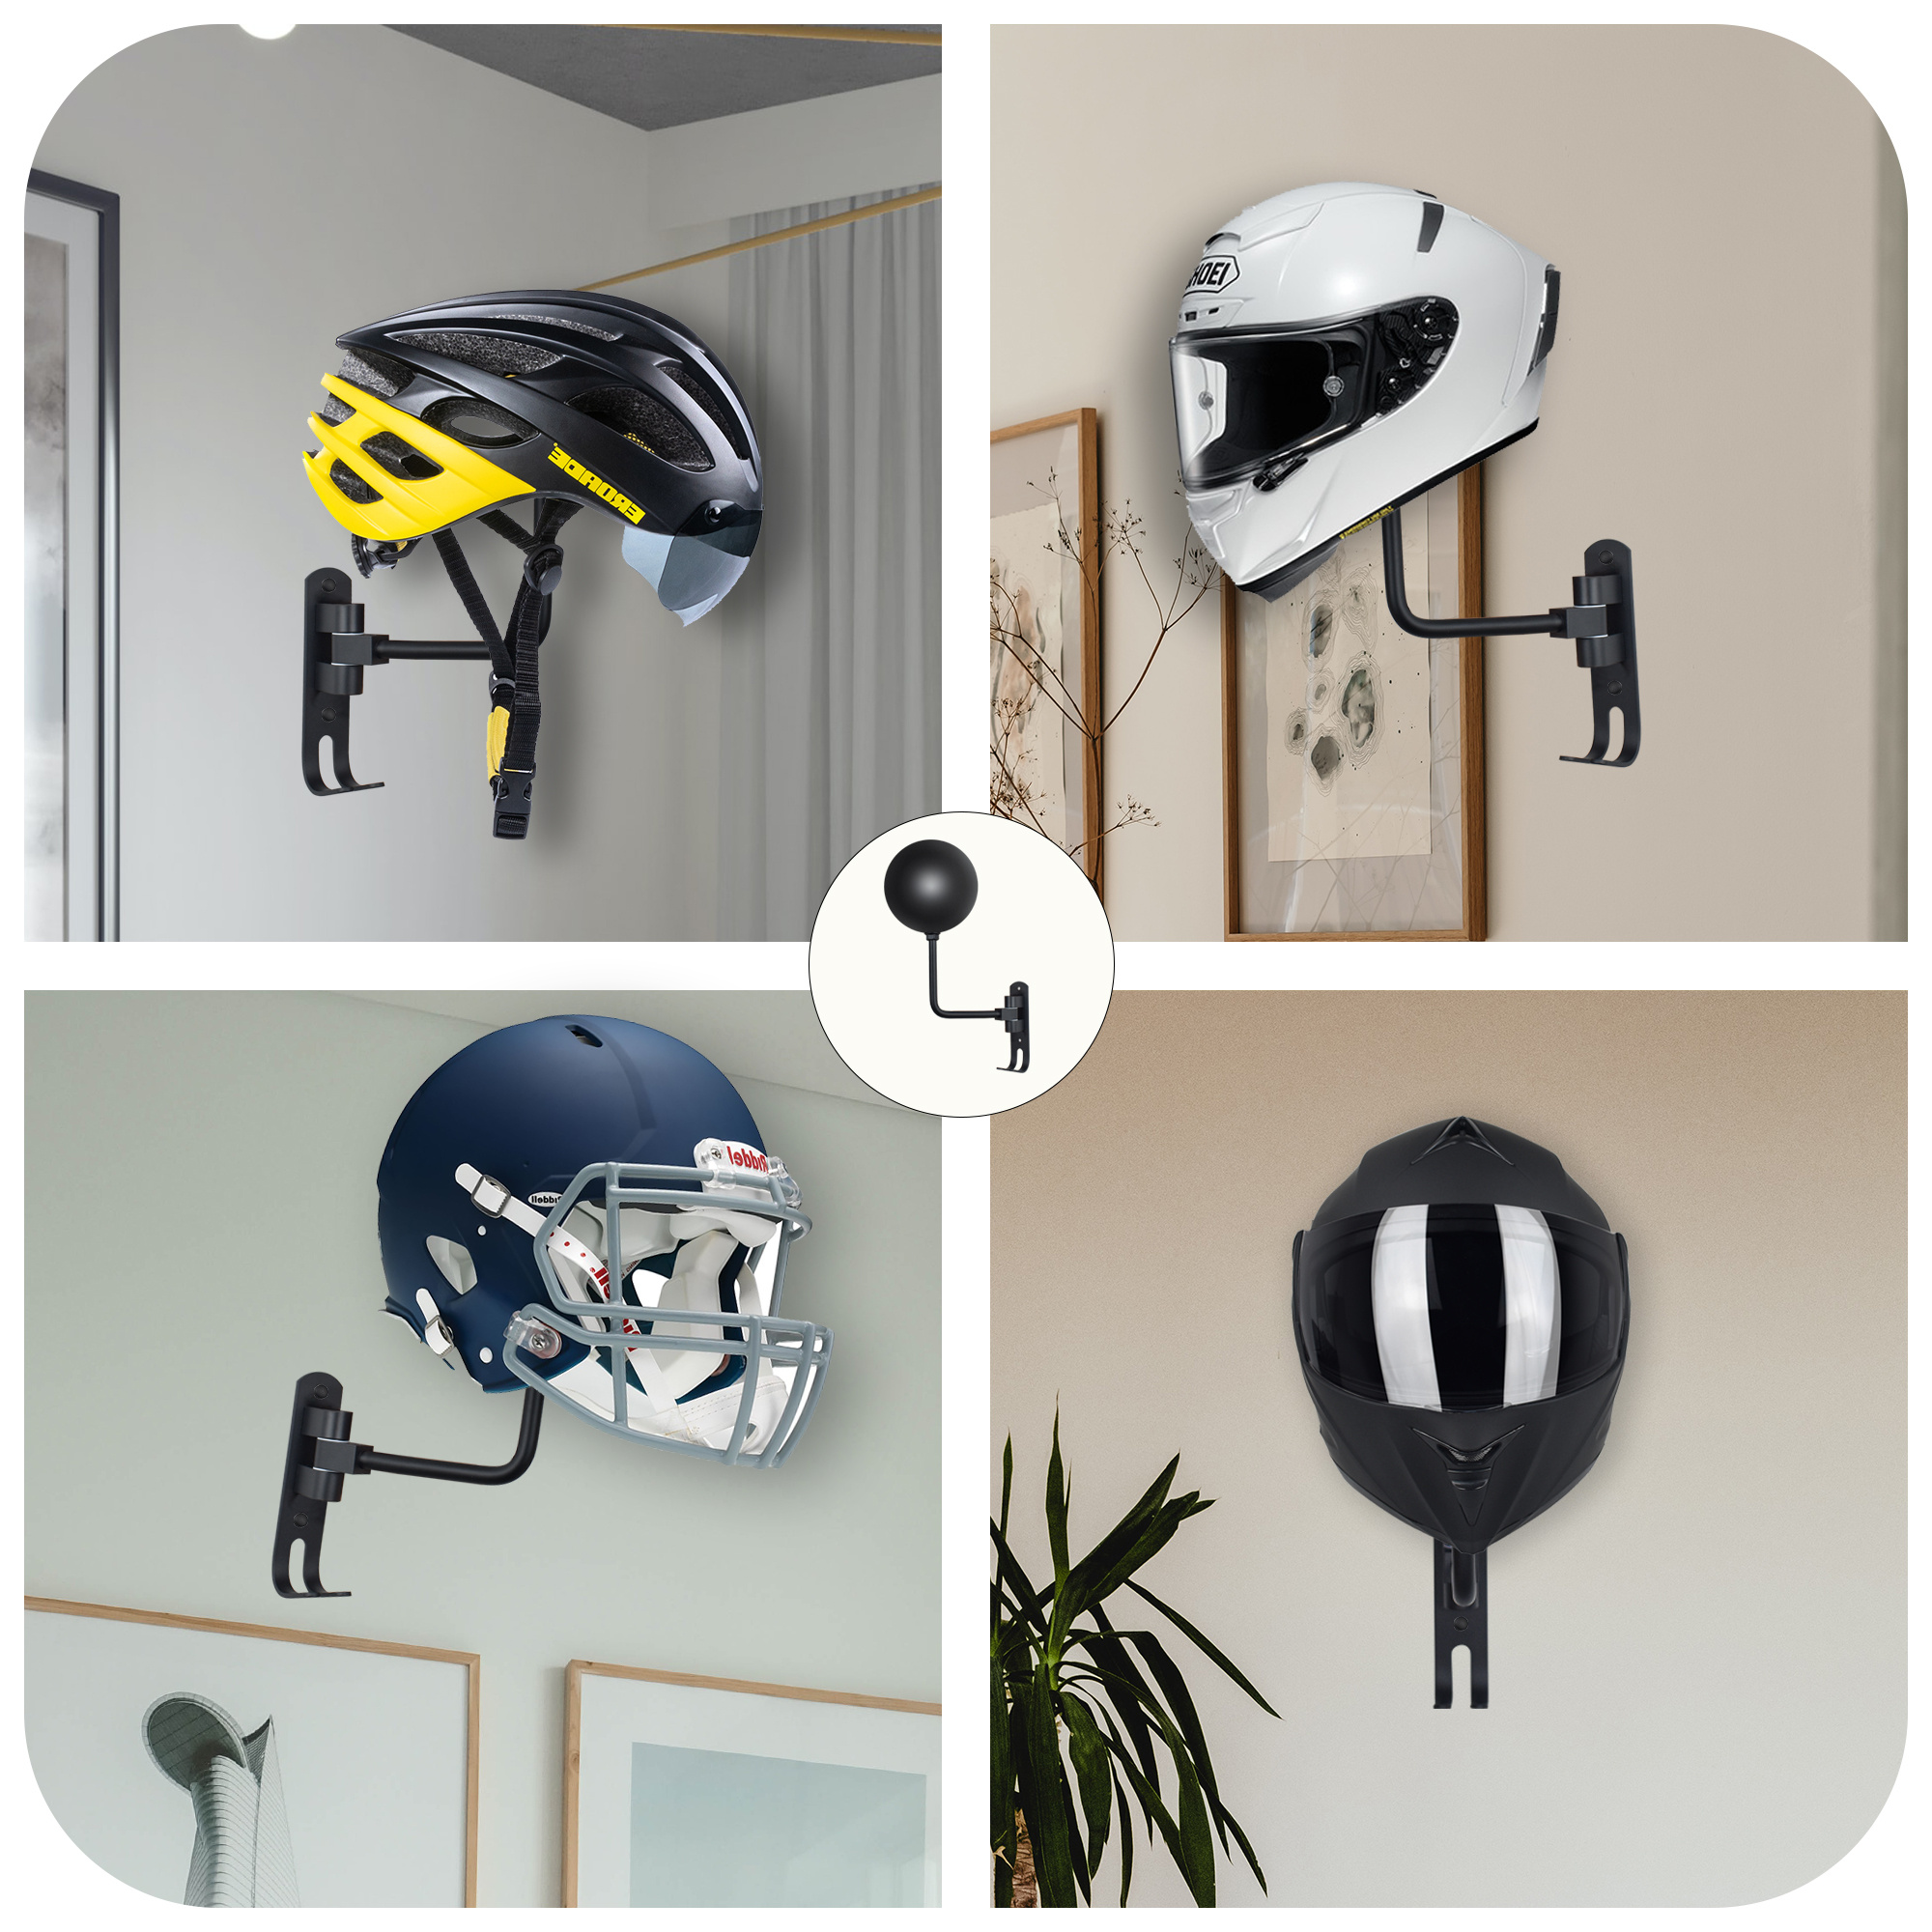  Tooyuart Soporte para casco, soporte para casco de calavera,  soporte de pared para casco con 2 ganchos, colgador de casco para abrigos,  gorras, béisbol, casco de rugby, accesorios de motocicleta 